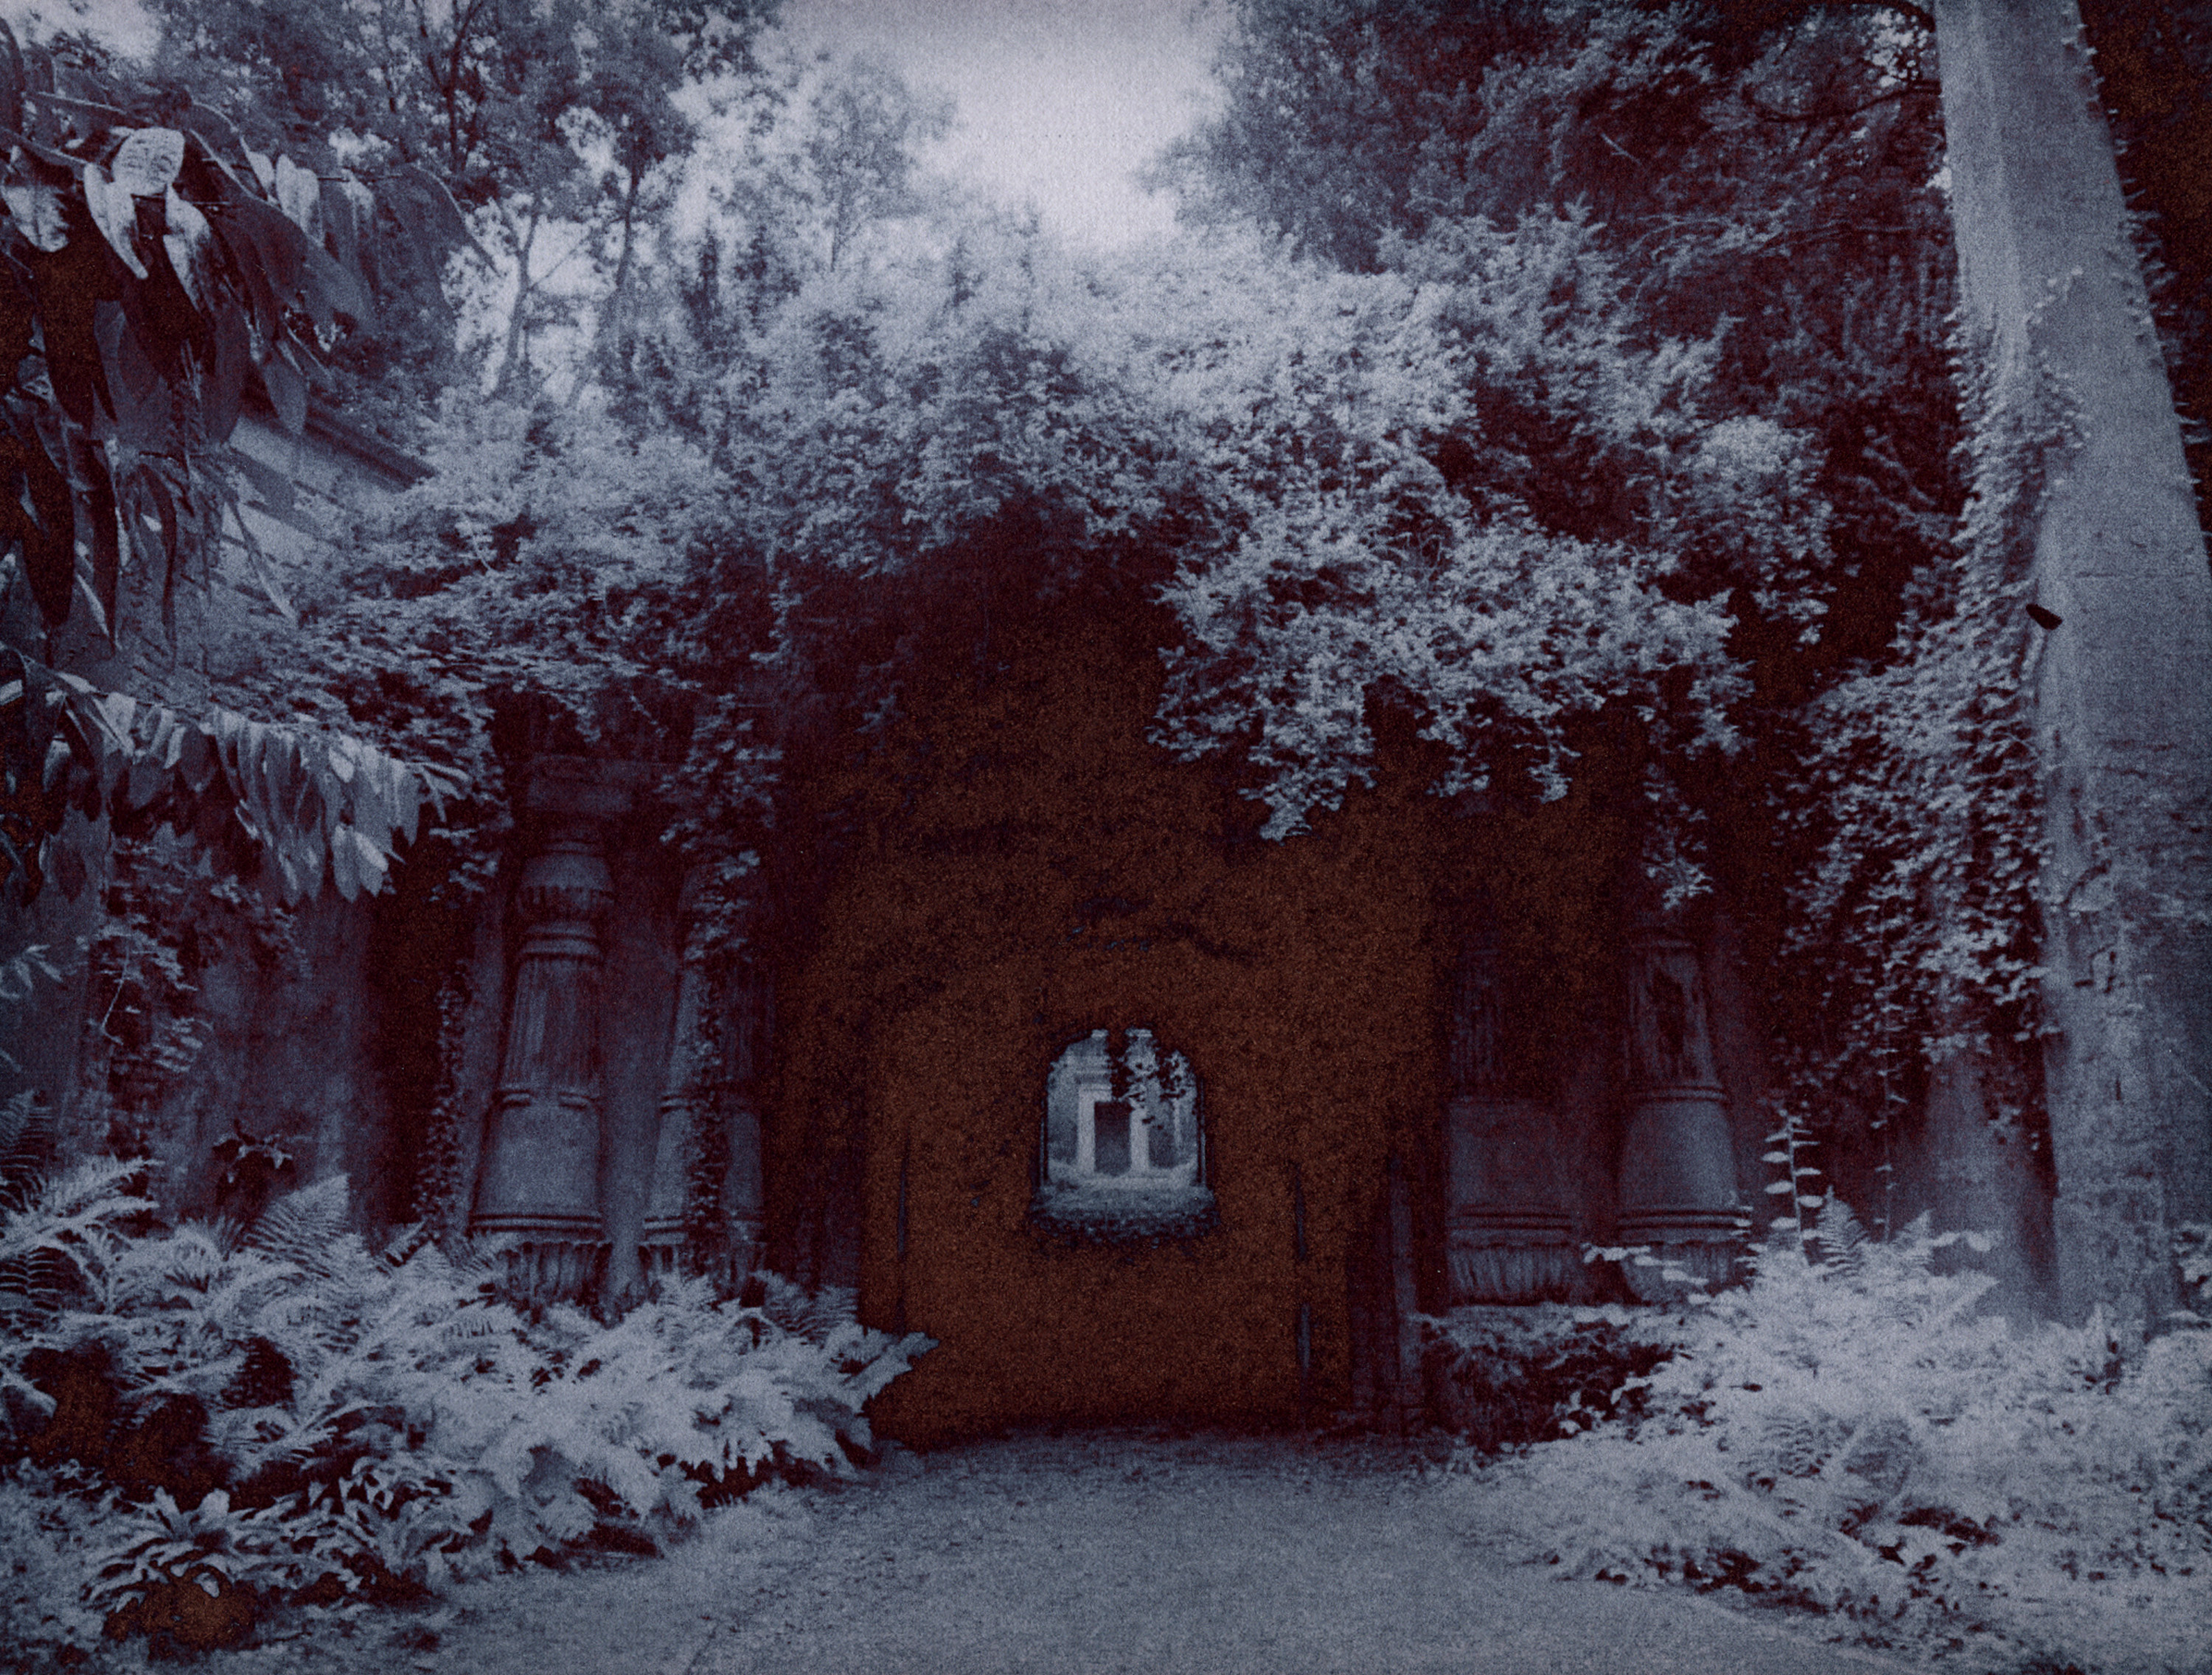 photo of door and shrubs